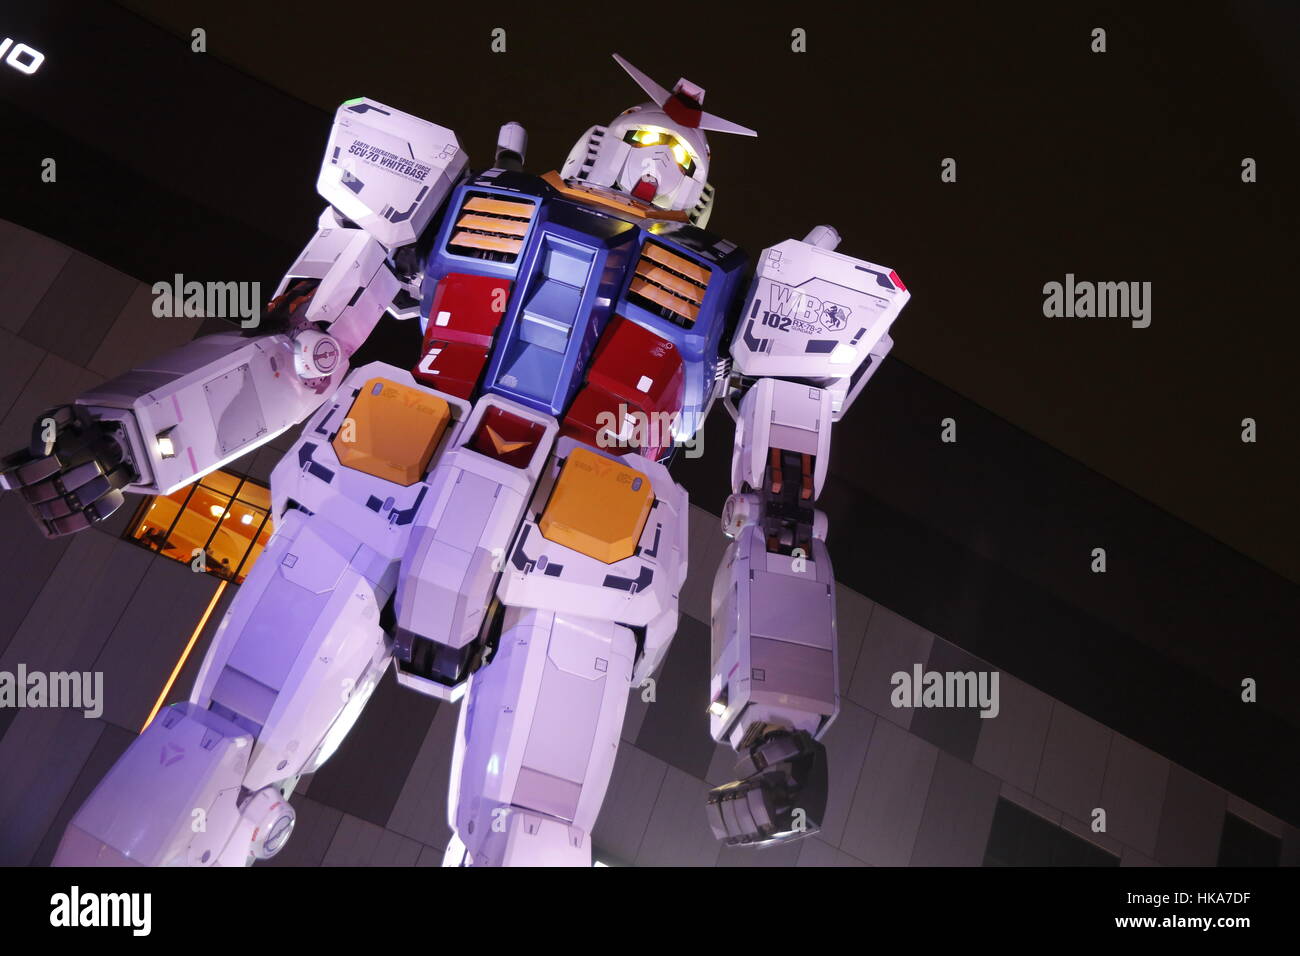 Taille réelle statue de Gundam à Gundam/Tokyo, Odaiba, Tokyo, Japon, 13.12.2016. Banque D'Images